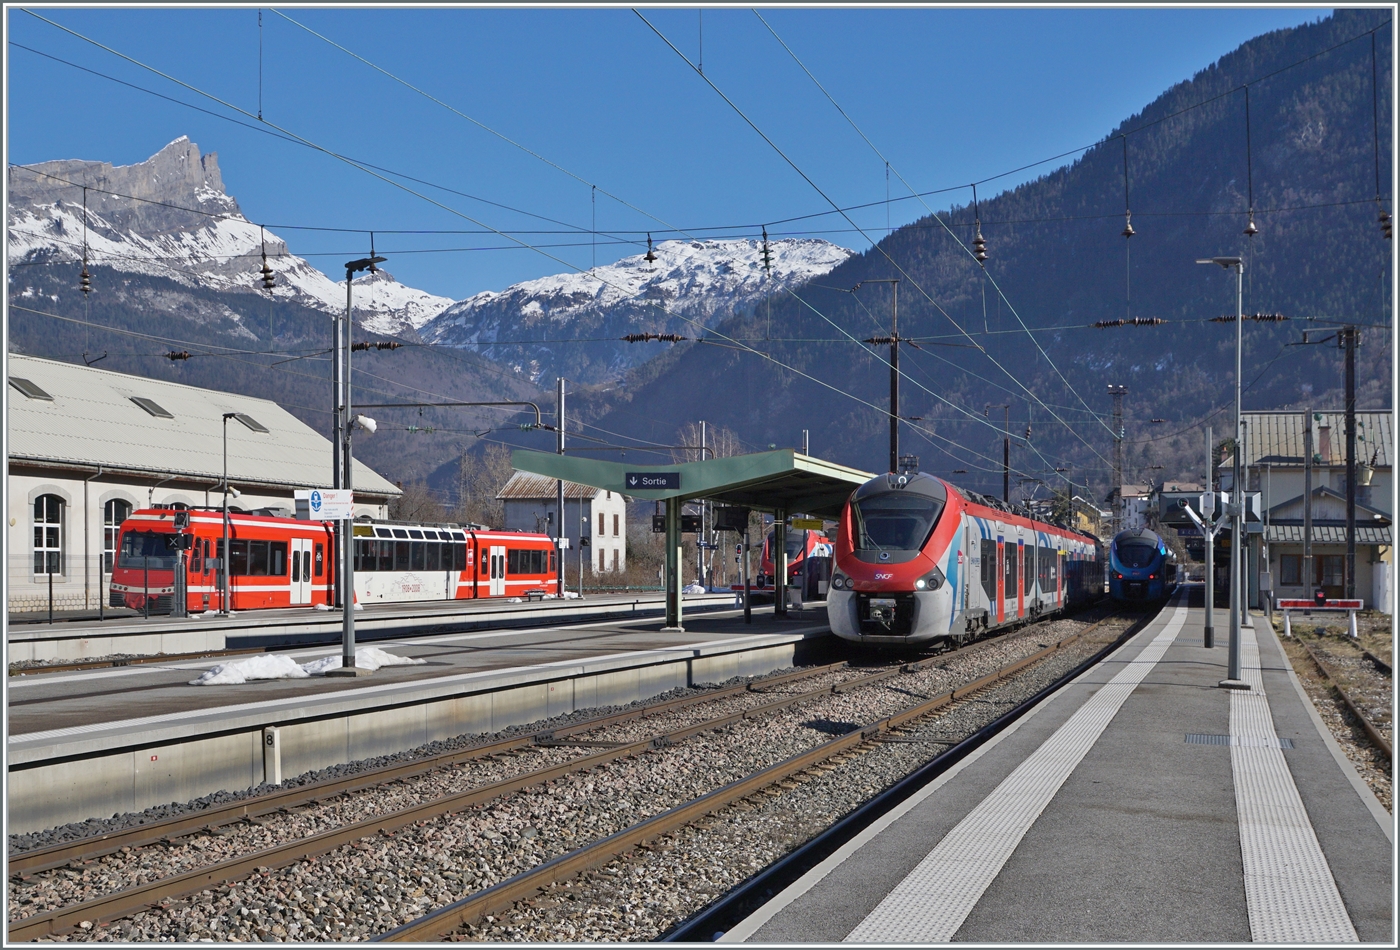 Blick auf den Bahnhof von St-Gervais Les Bains Le Fayet mit verschiedenen, z.T. verdeckten Zgen der SNCF in Normal- und Schmalspur. Links eine SNCF X 850, in der Bildmitte SNCF Z 31500 in Lman Express Lackierung. 

14.02.2023